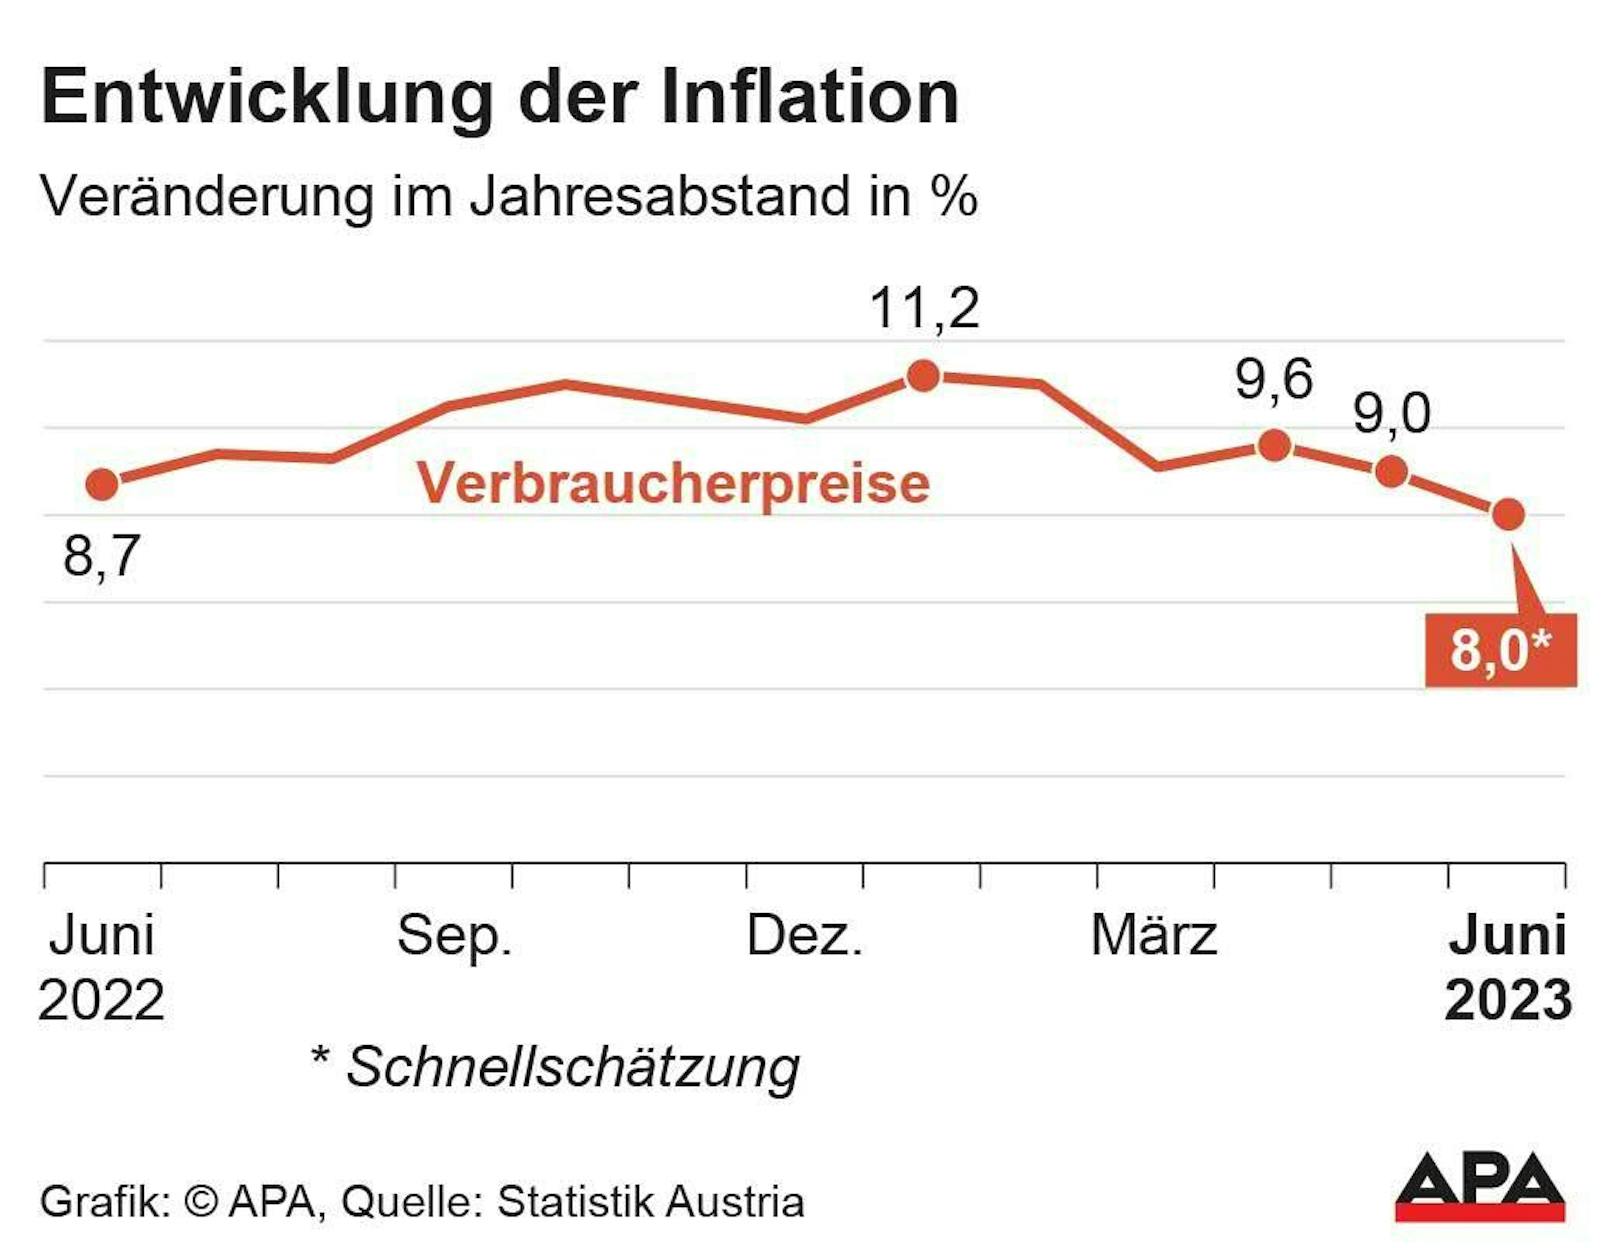 Verbraucherpreisindex (VPI) Schnellschätzung der Inflationsrate Juni 2022 bis 2023.